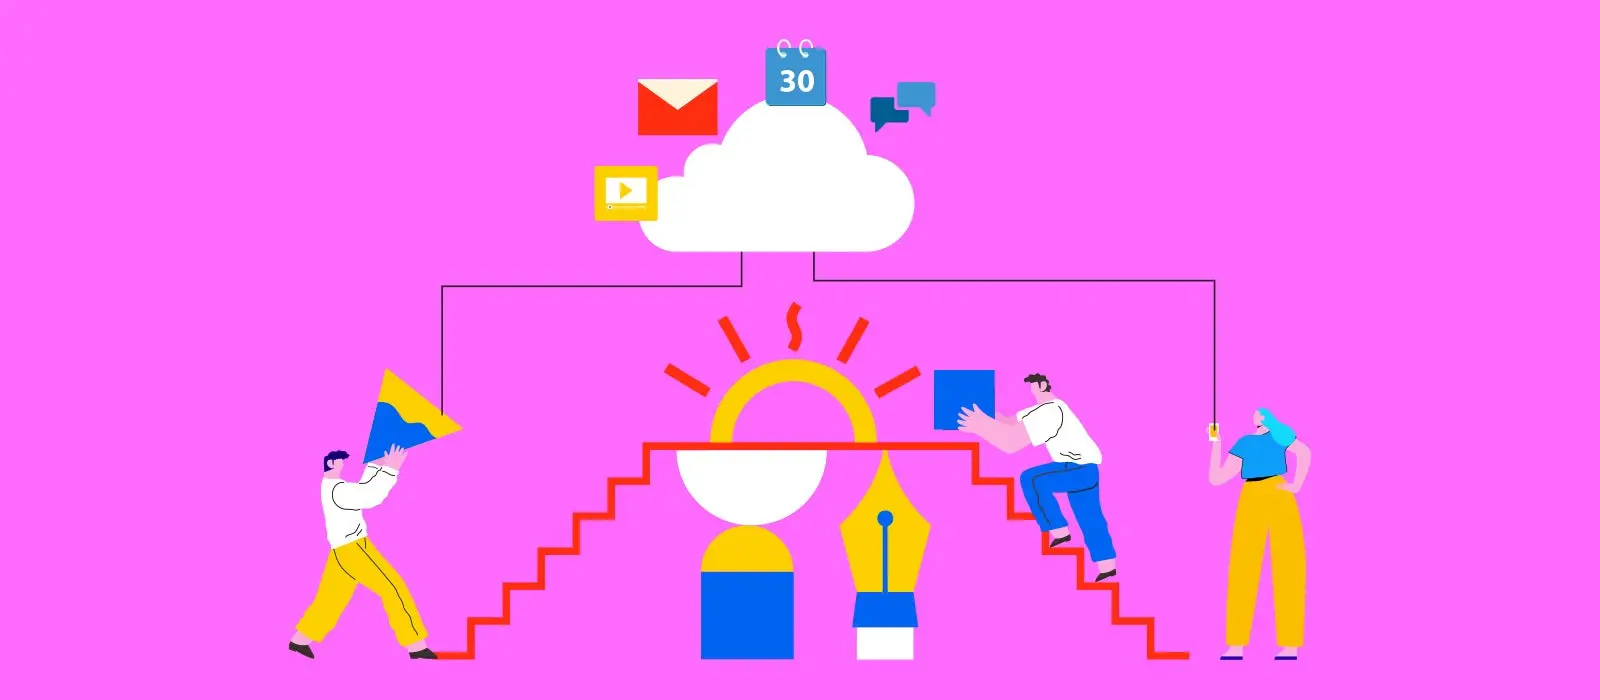 Ilustracion de 3 personas trabajando y subiendo una escalera y realizando un backup en la nuve con la ayuda de creative cloud